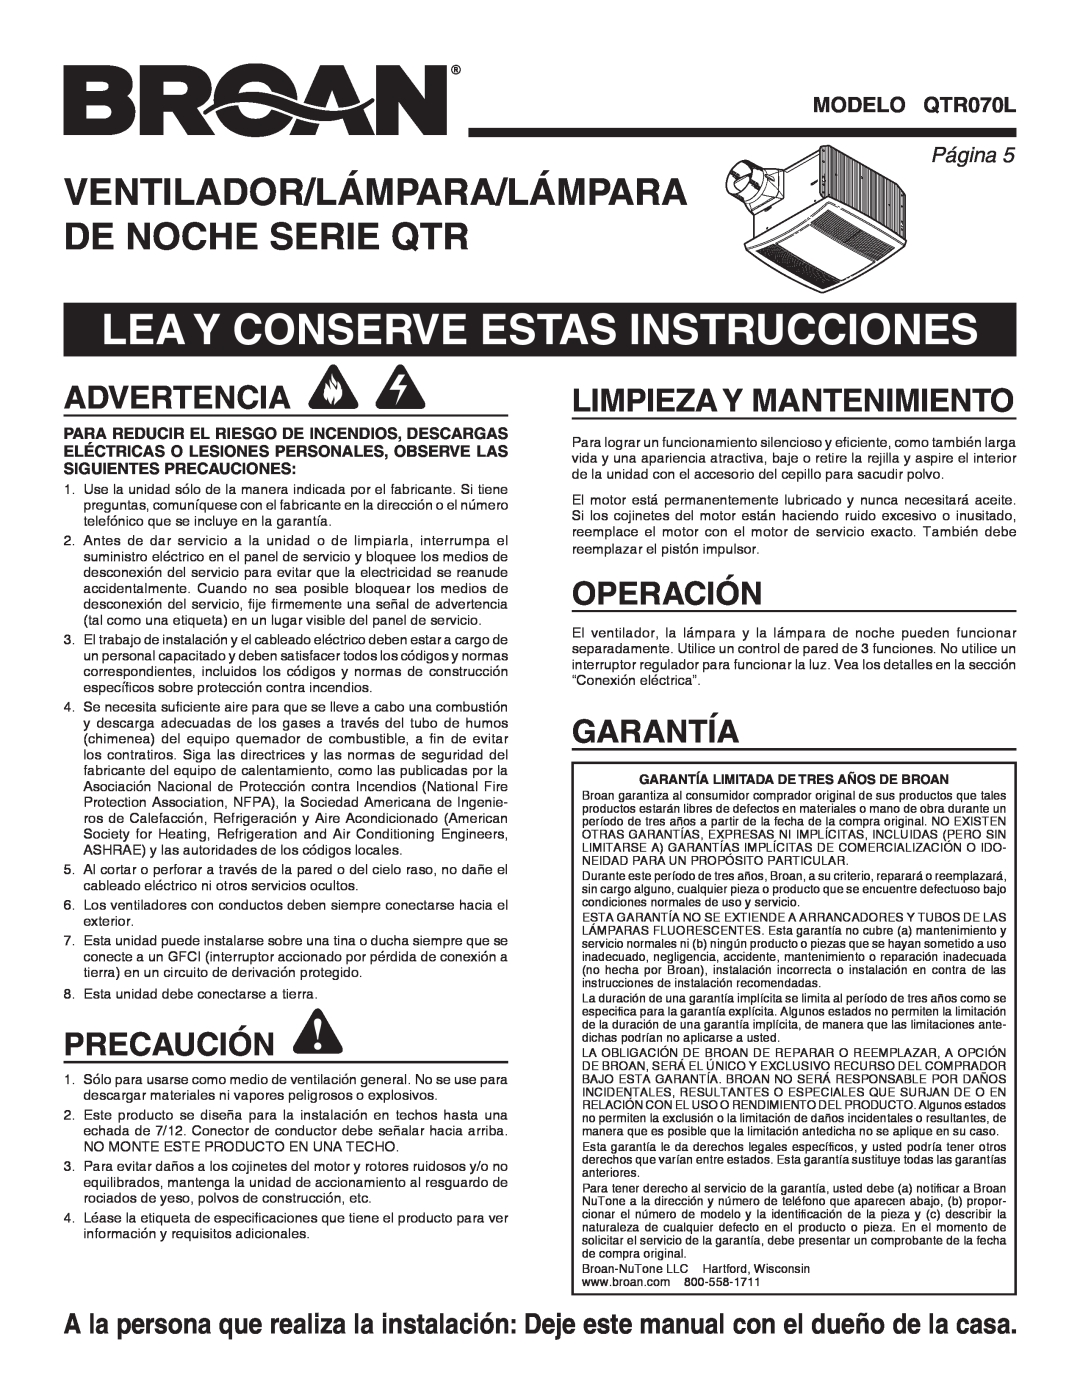 Broan QTR070L Lea Y Conserve Estas Instrucciones, Advertencia, Precaución, Limpieza Y Mantenimiento, Operación, Garantía 